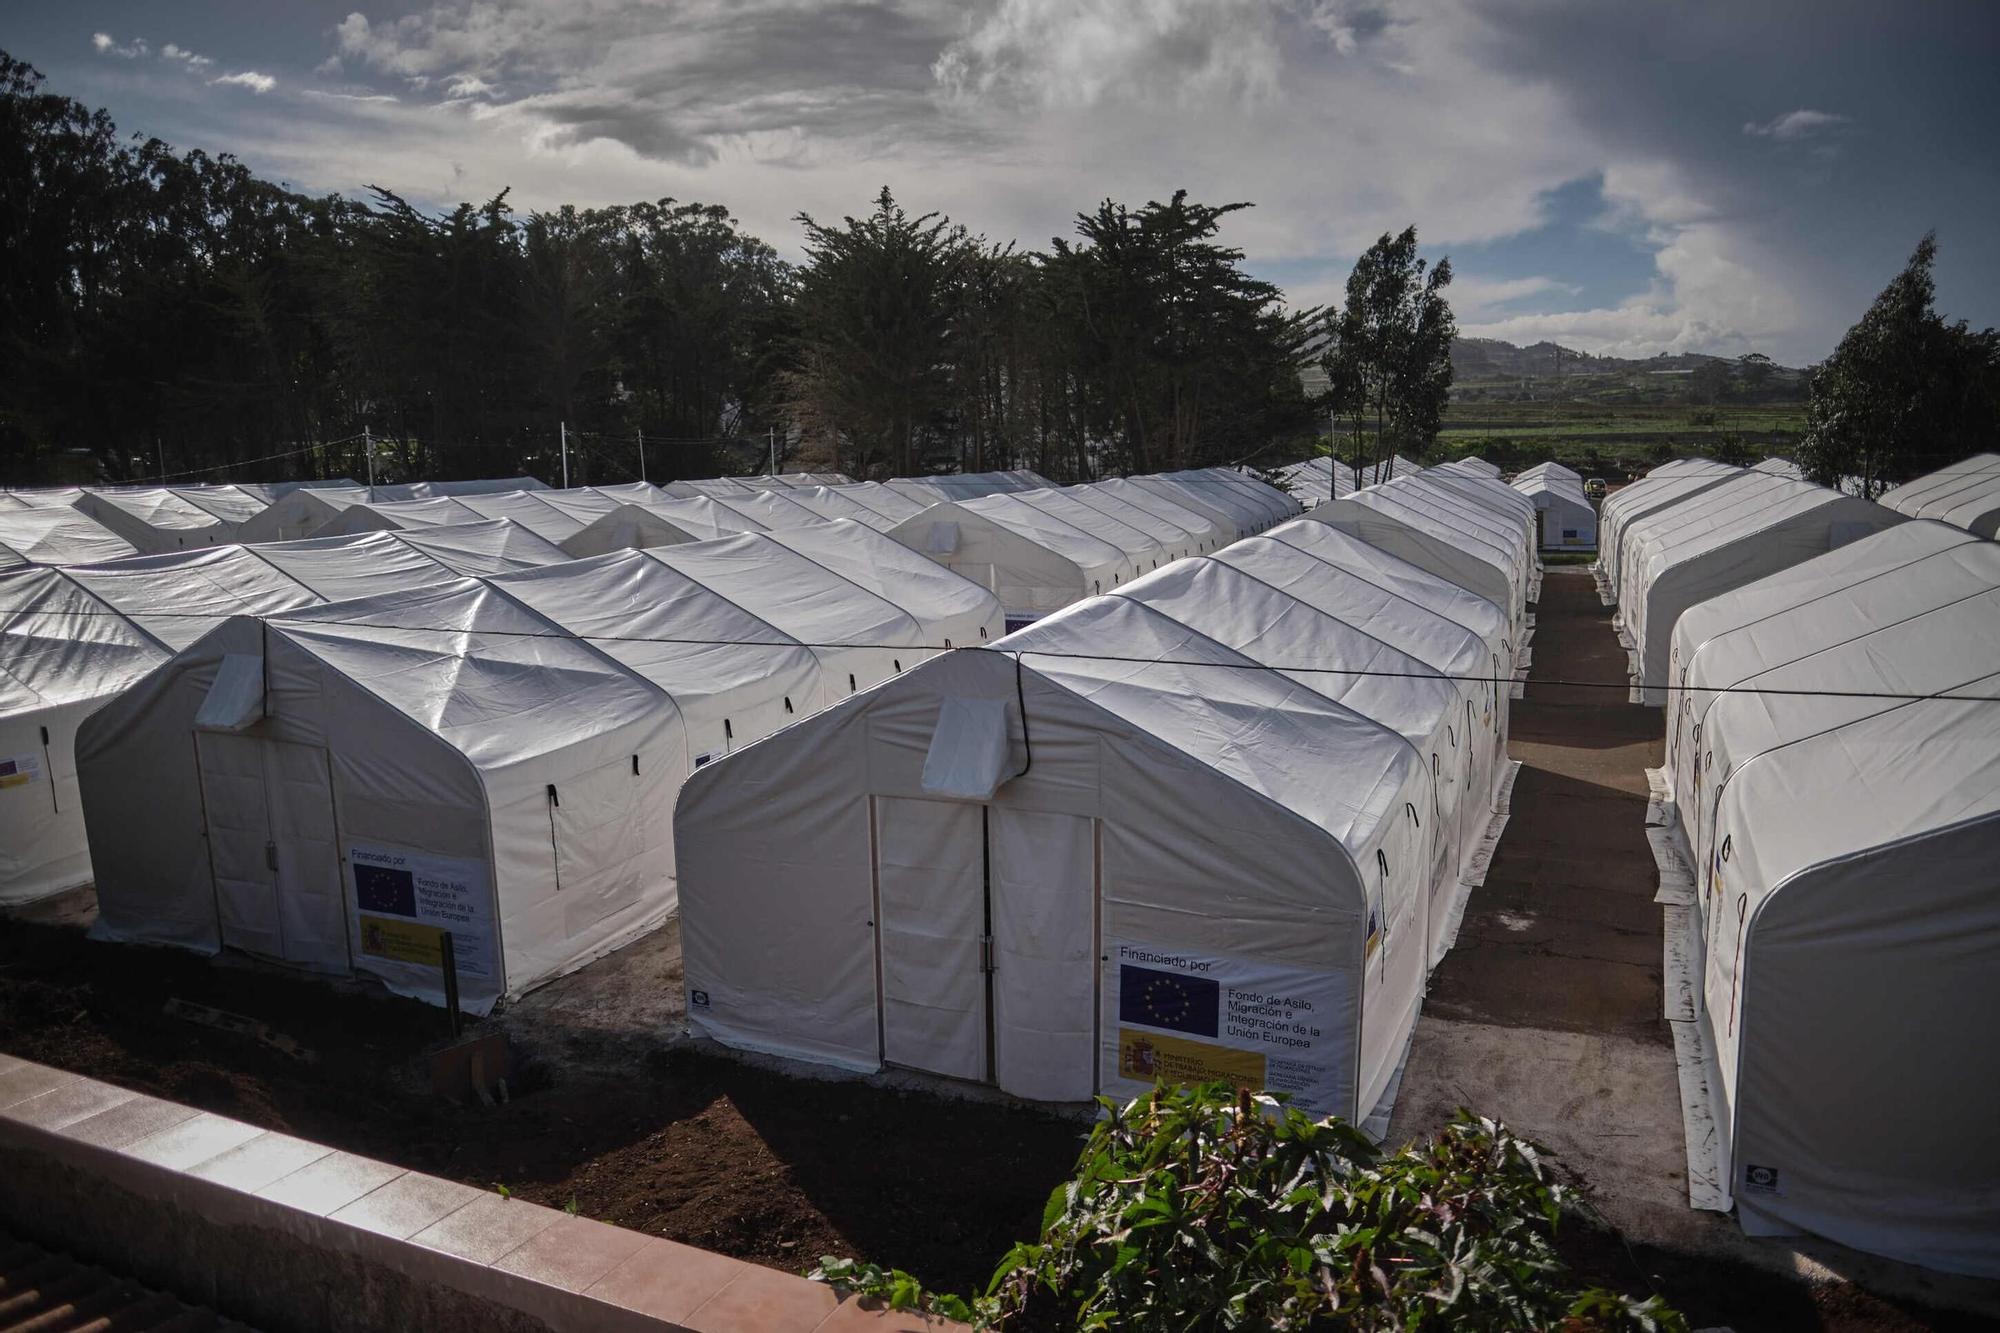 Preparación de acuartelamientos para acoger migrantes en Tenerife